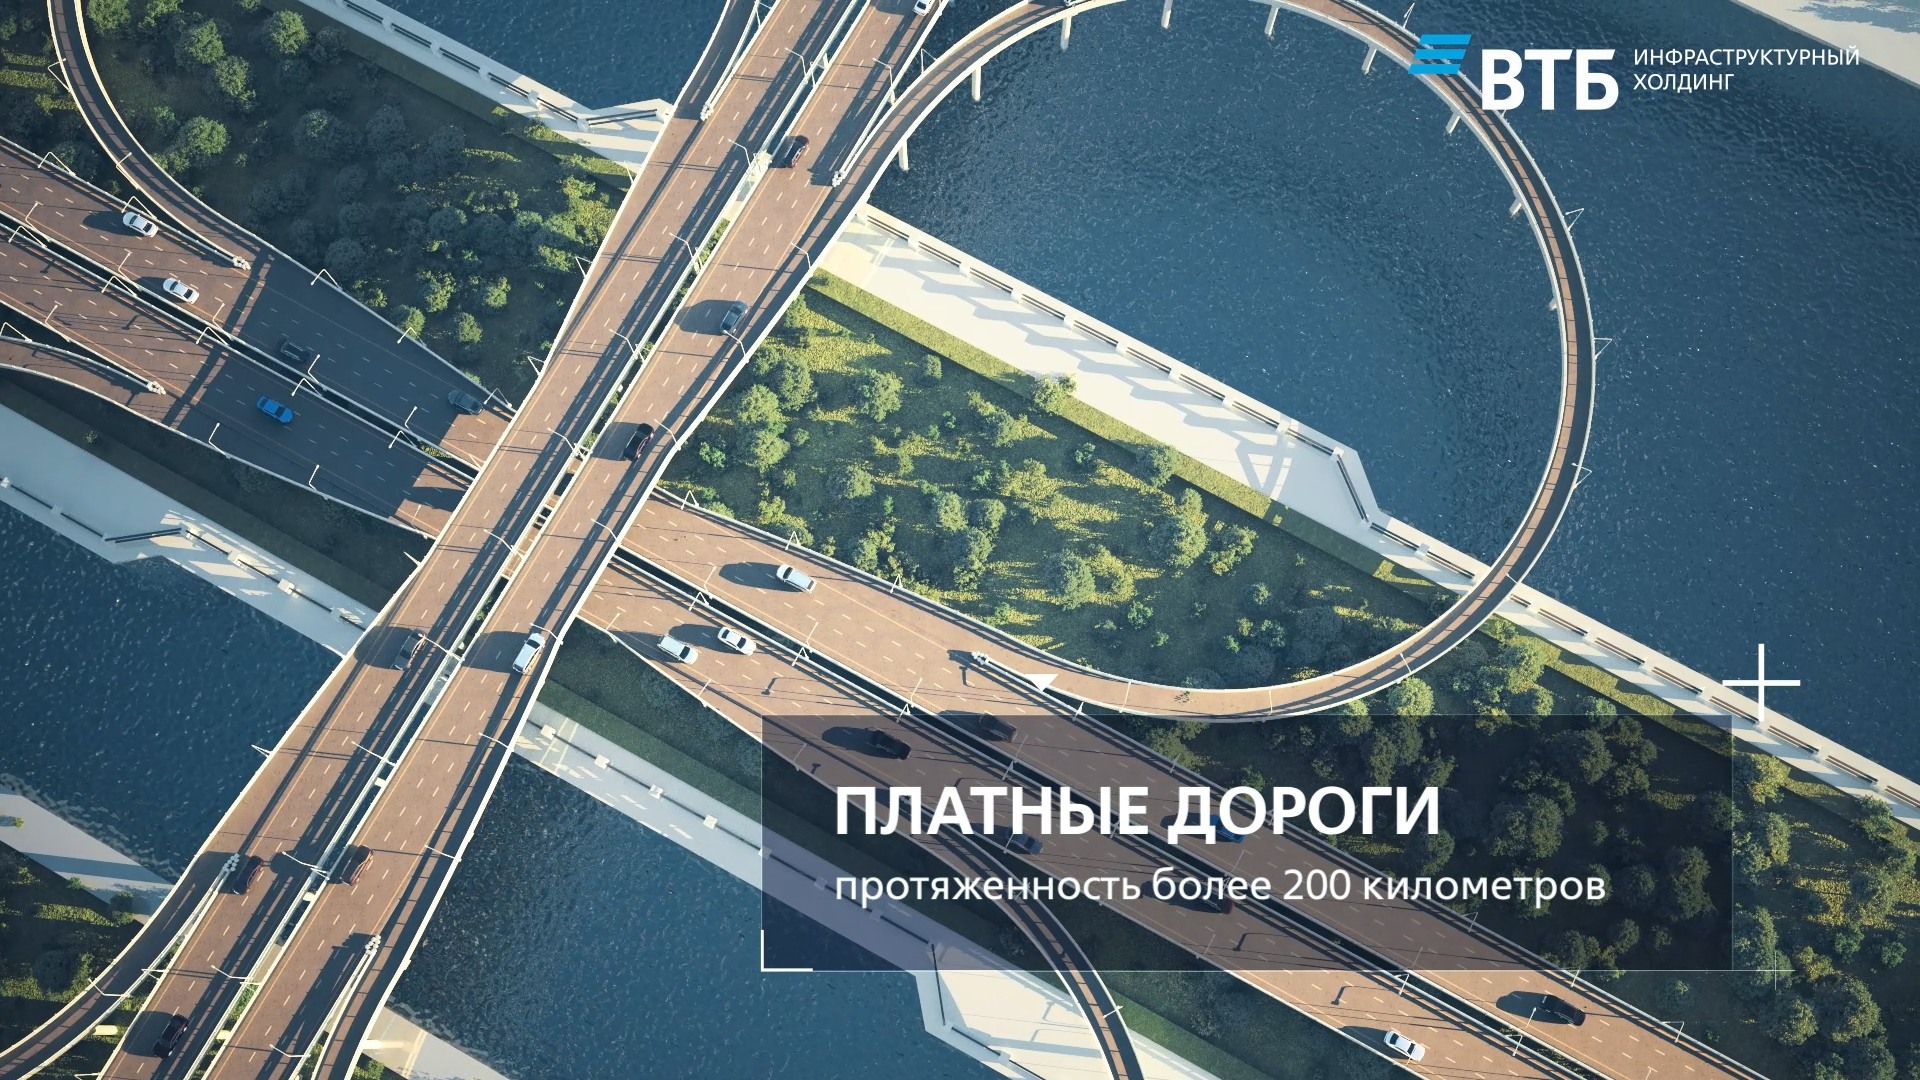 ВТБ инфраструктурный проект